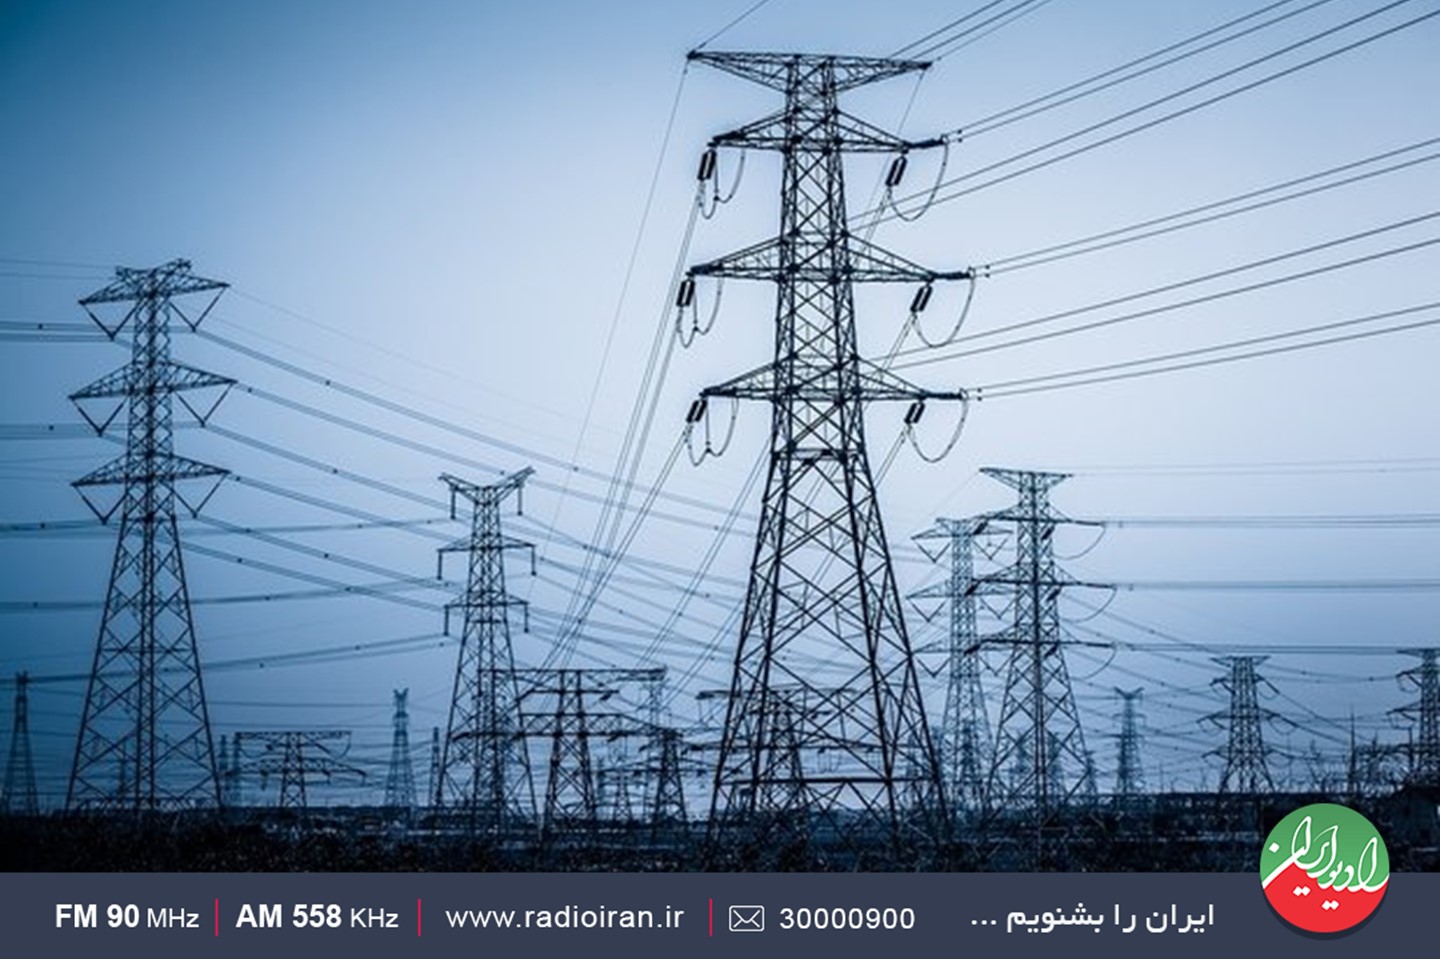 مدیریت انرژی برق در رادیو ایران